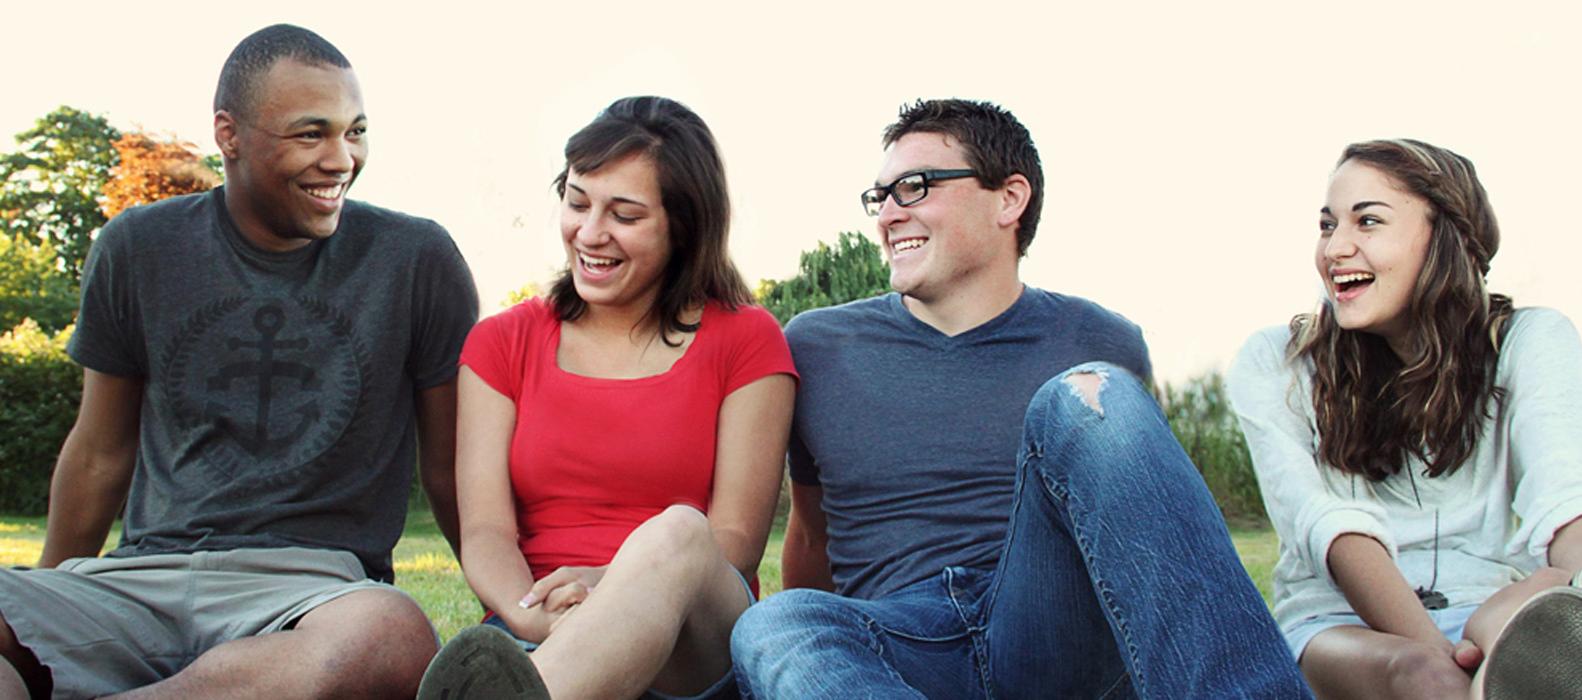 Foto: vier Jugendliche, die lachen